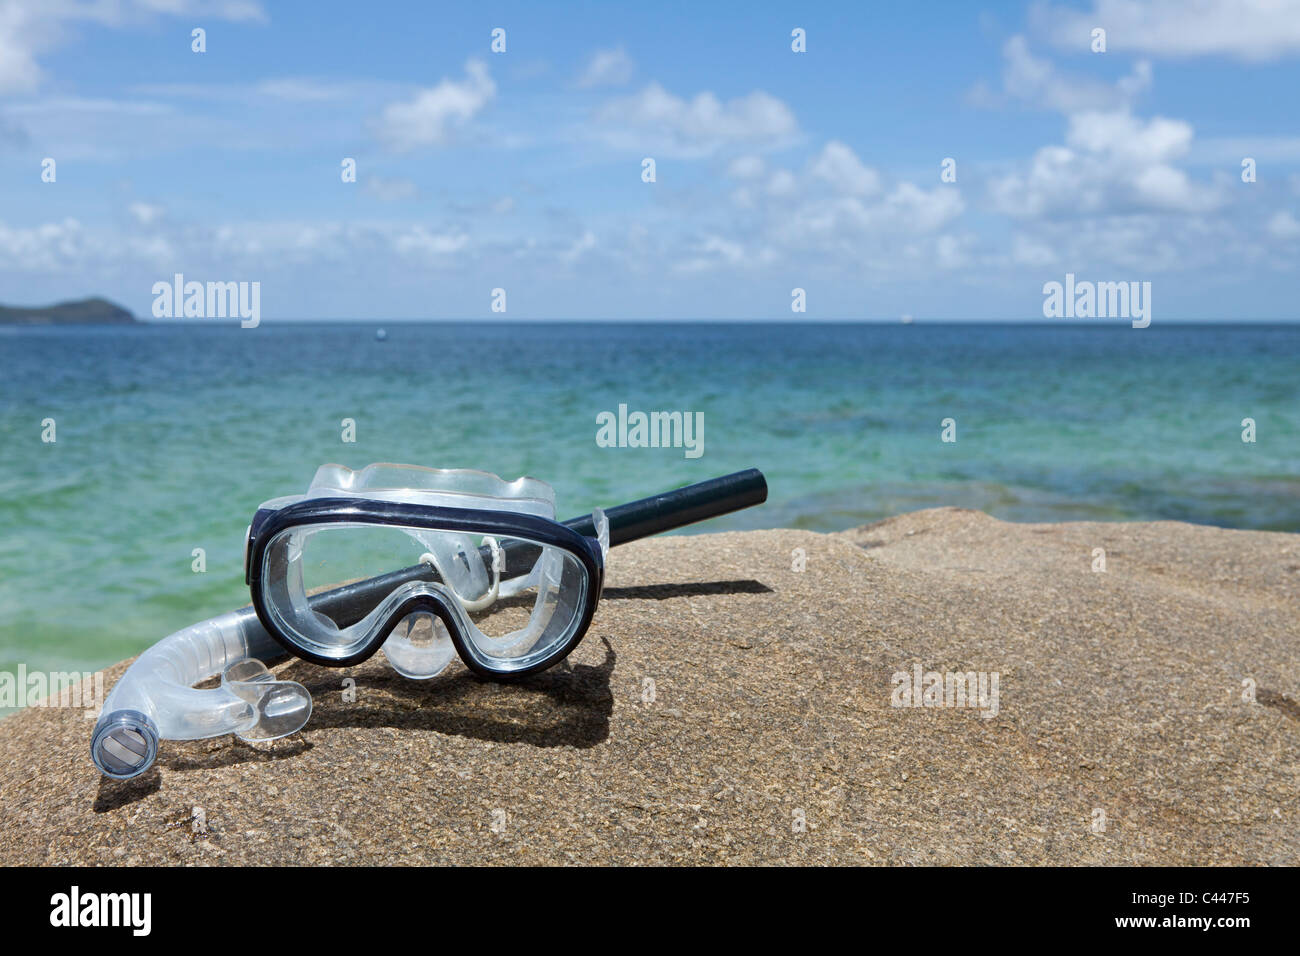 Eine Taucherbrille und Schnorchel auf einem Felsen in der Nähe von Meer Stockfoto